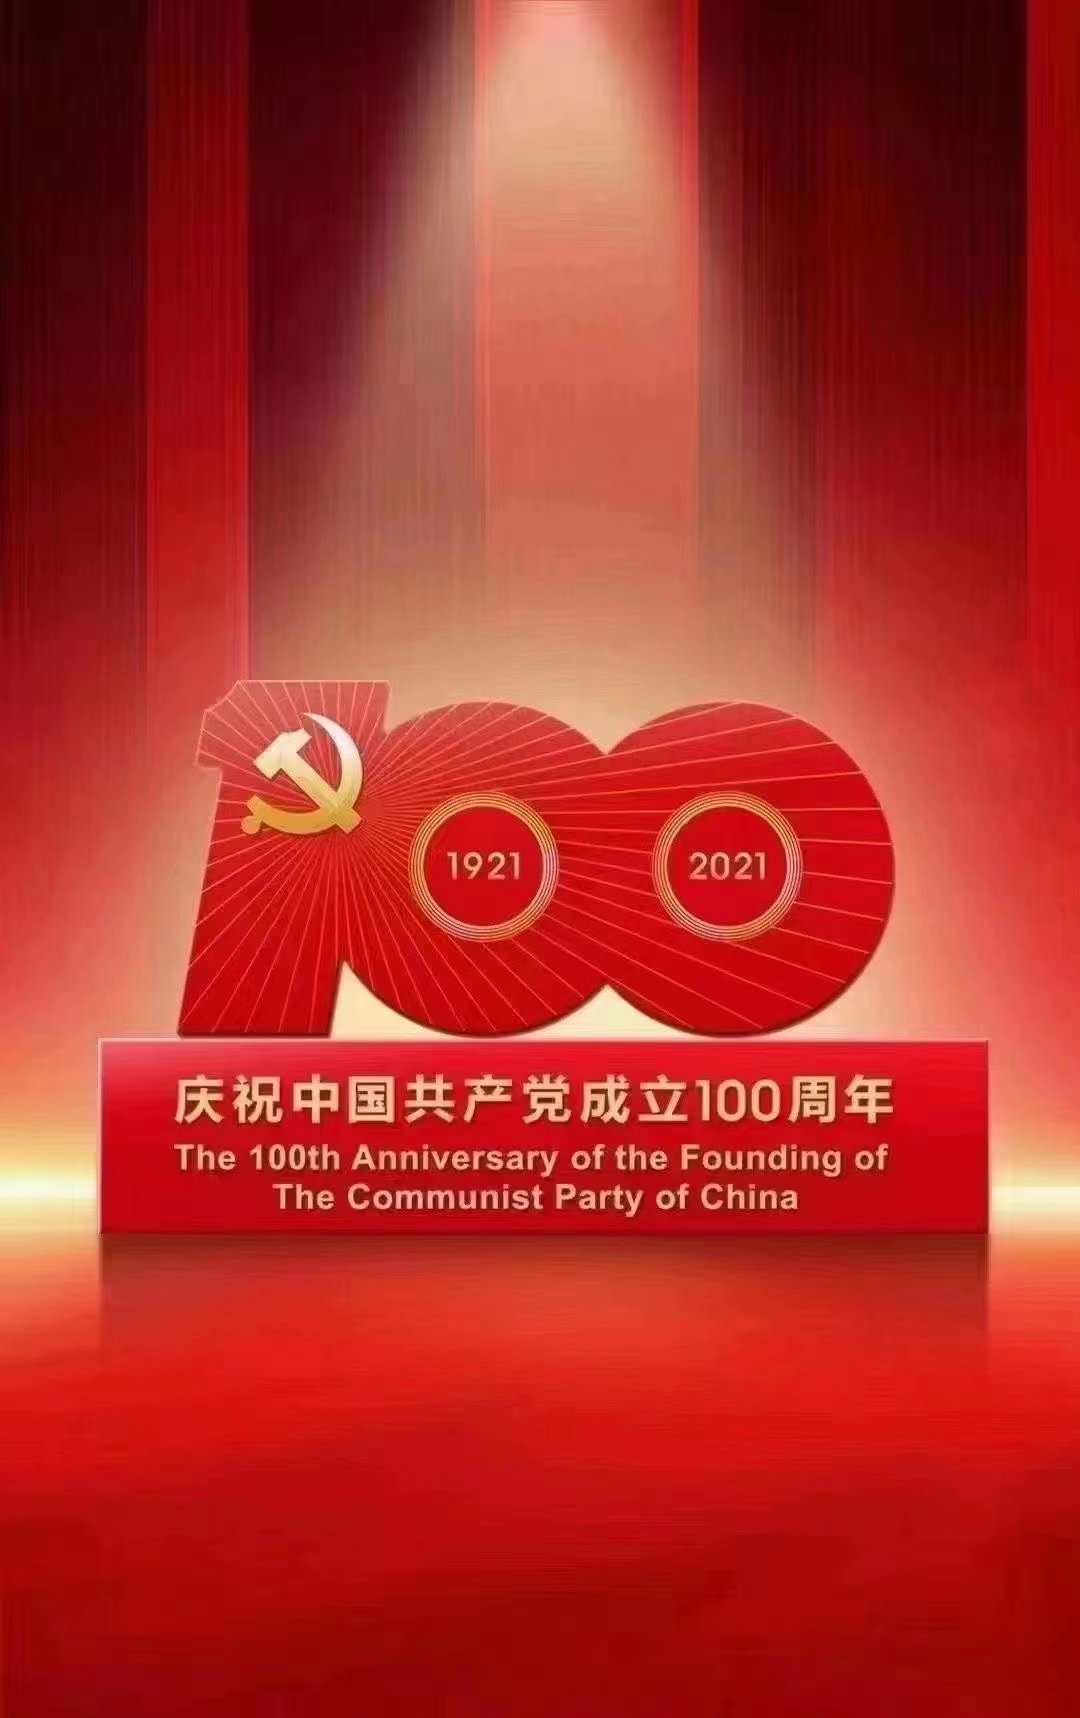 百年逢盛世，奋斗正当时，浦鑫物业庆祝建党100周年